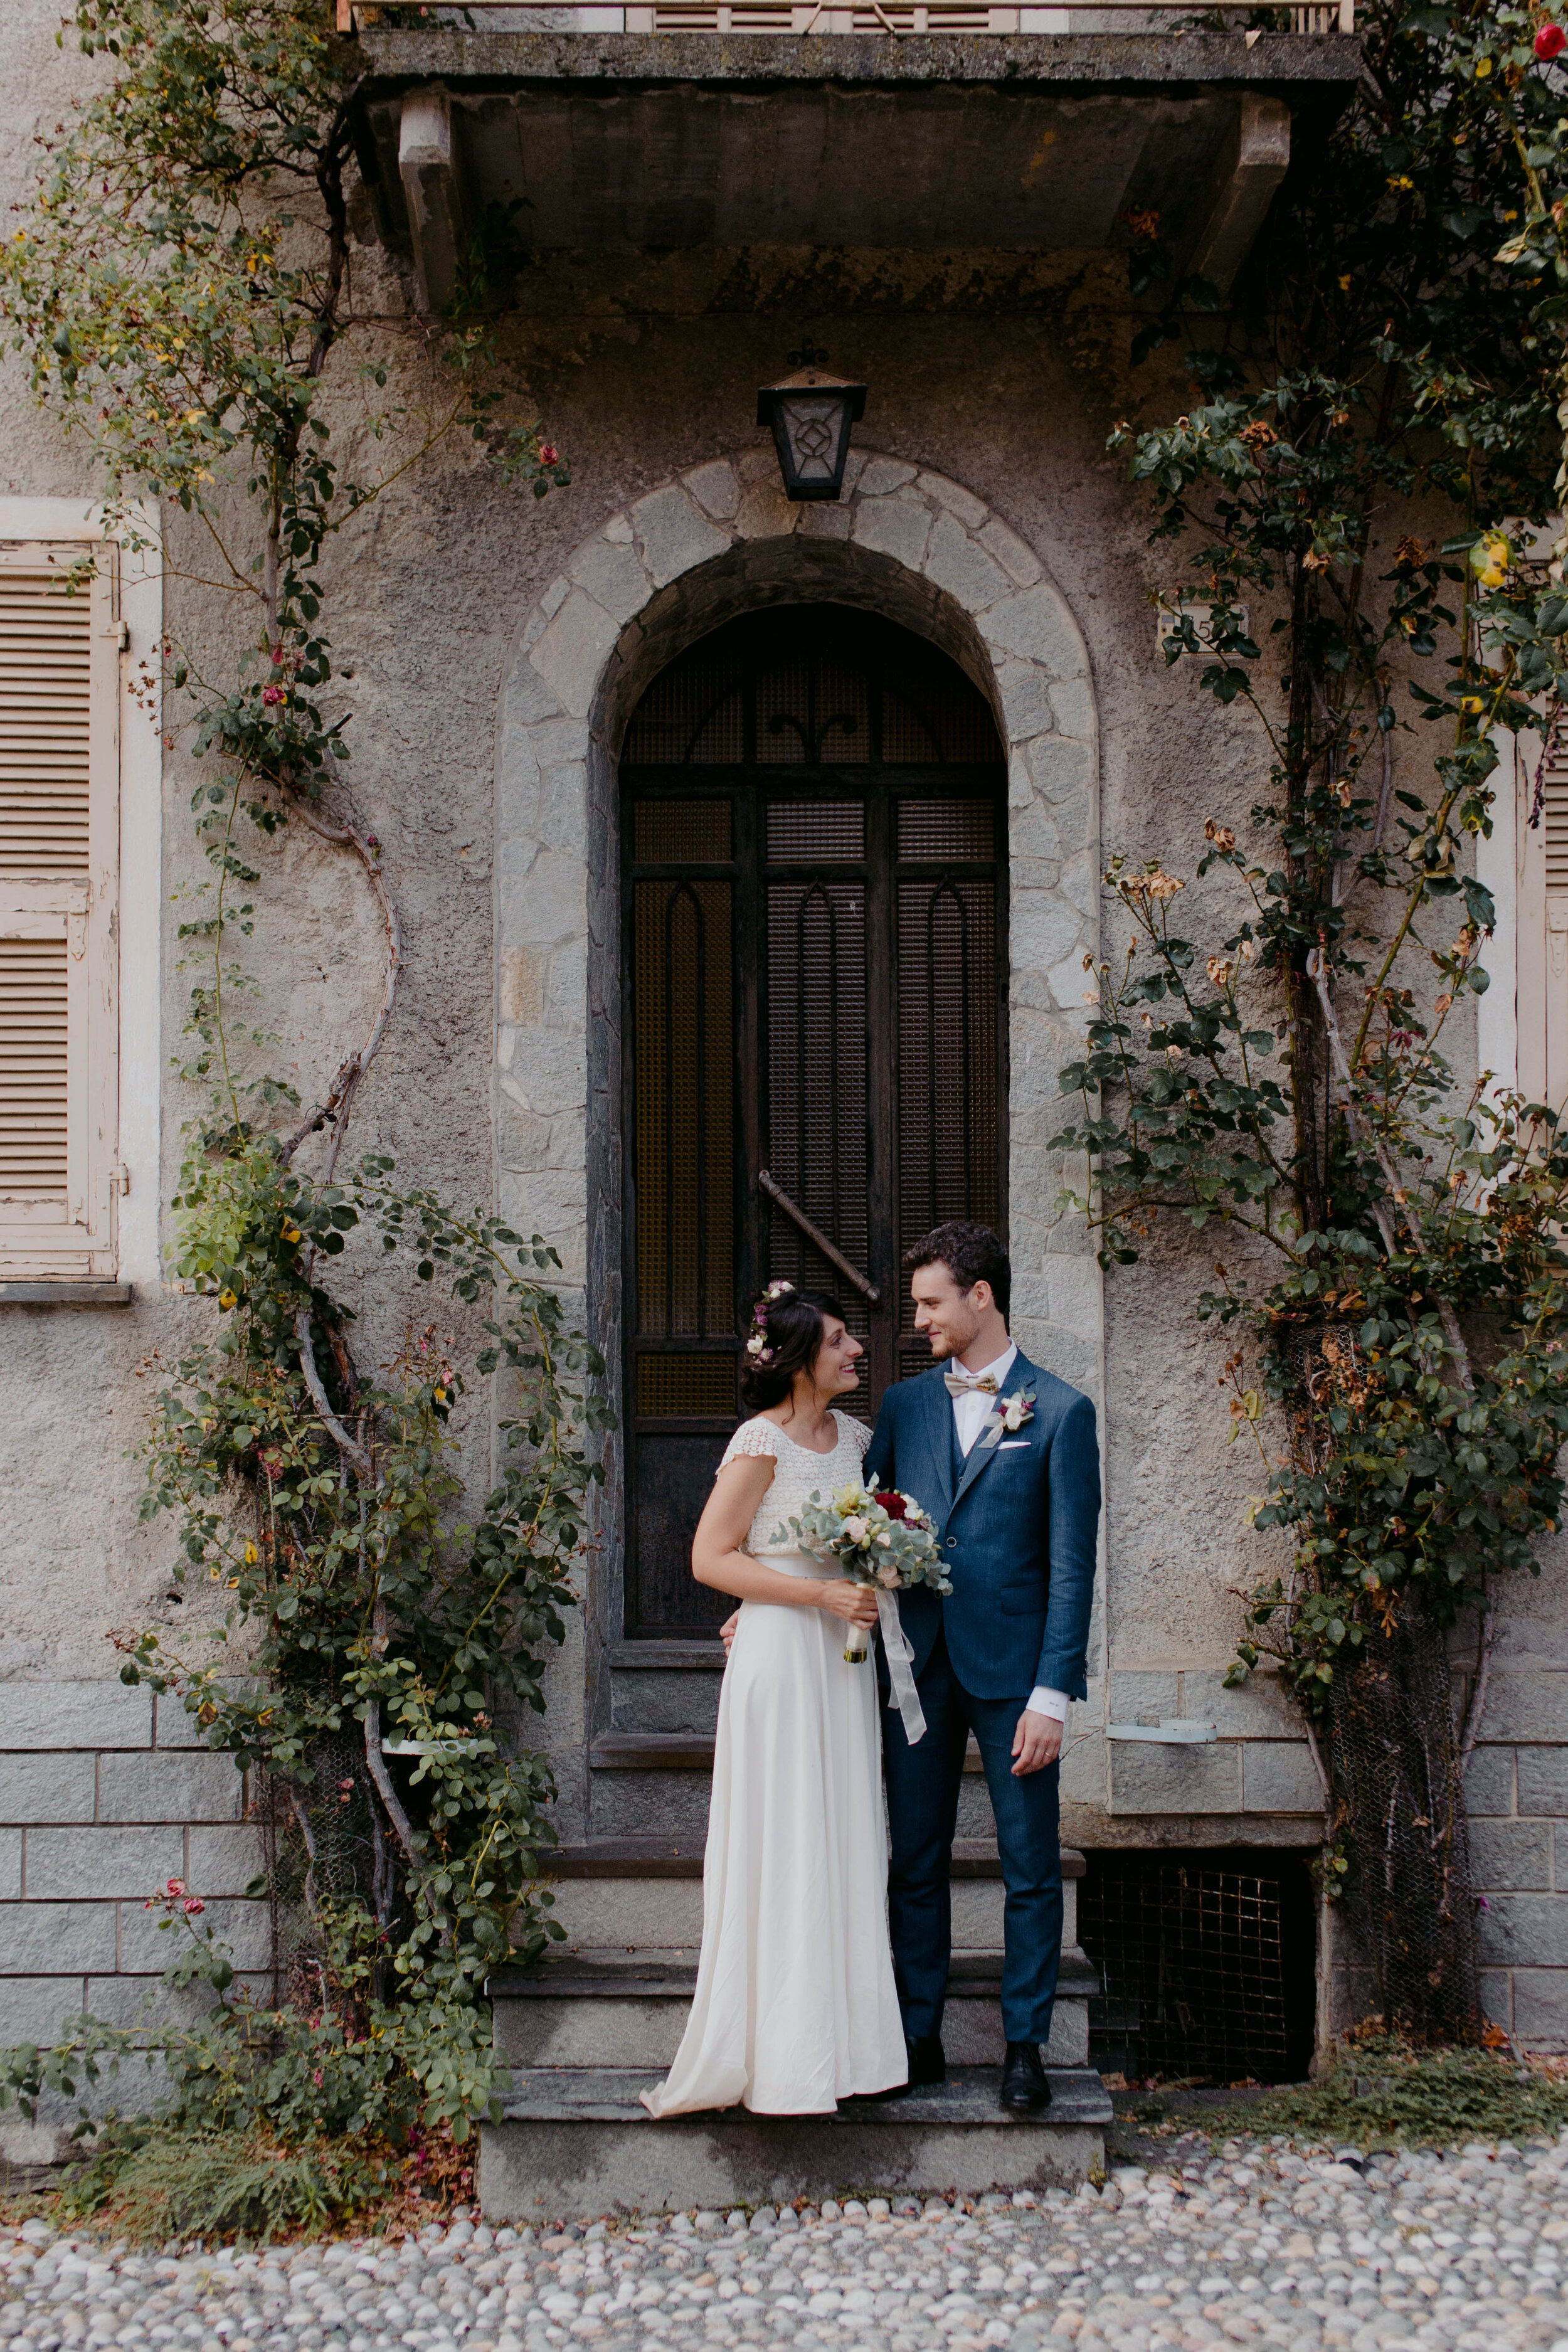 061 - Matrimonio in provincia di Cuneo - Miriam Callegari Fotografa.JPG